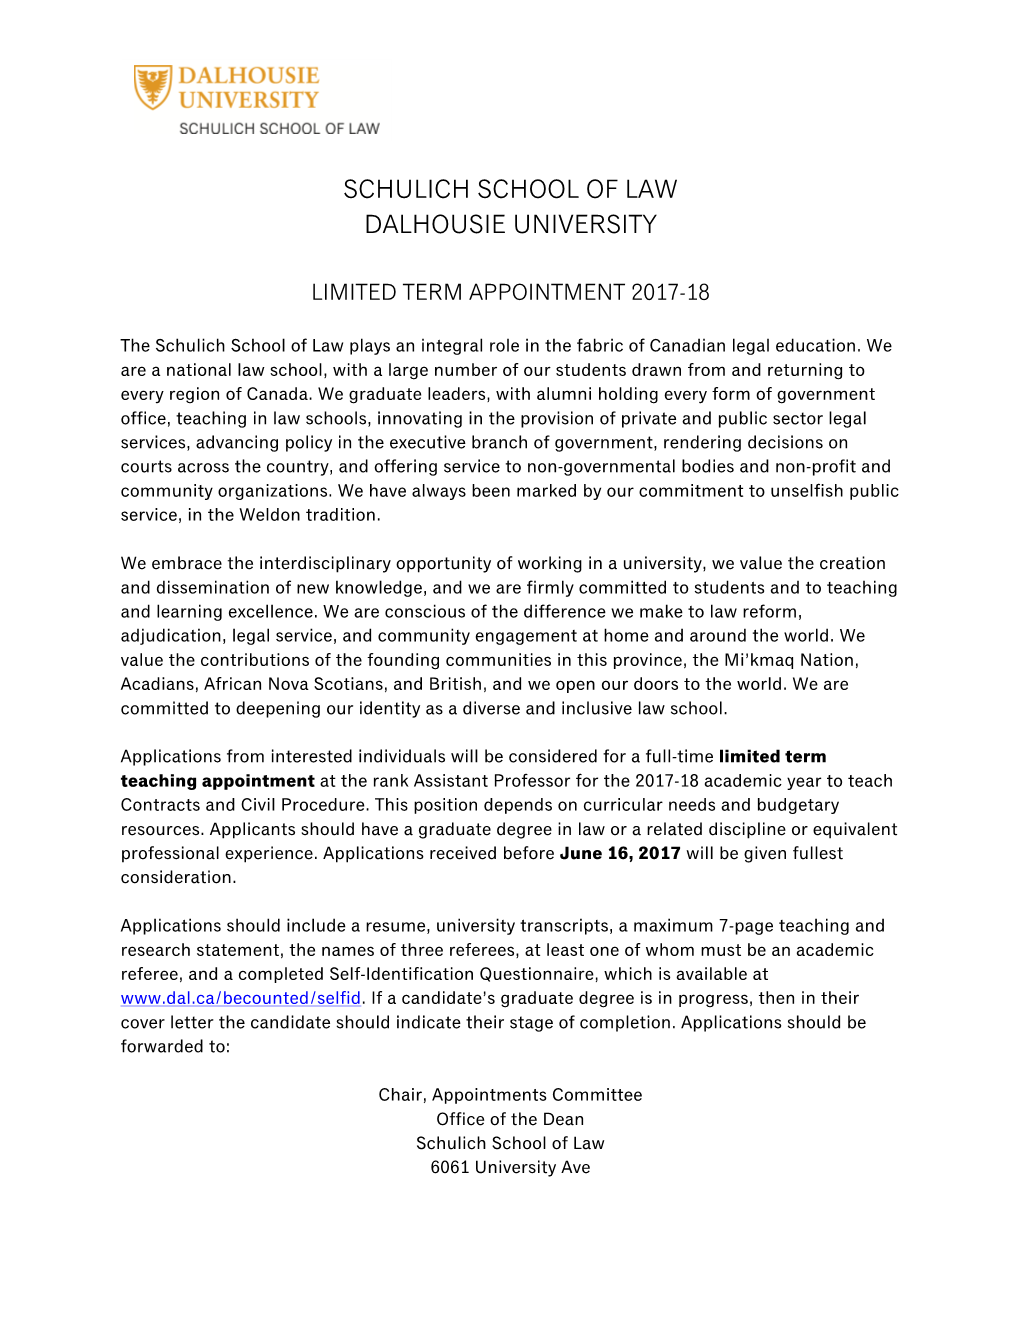 Schulich School of Law Dalhousie University